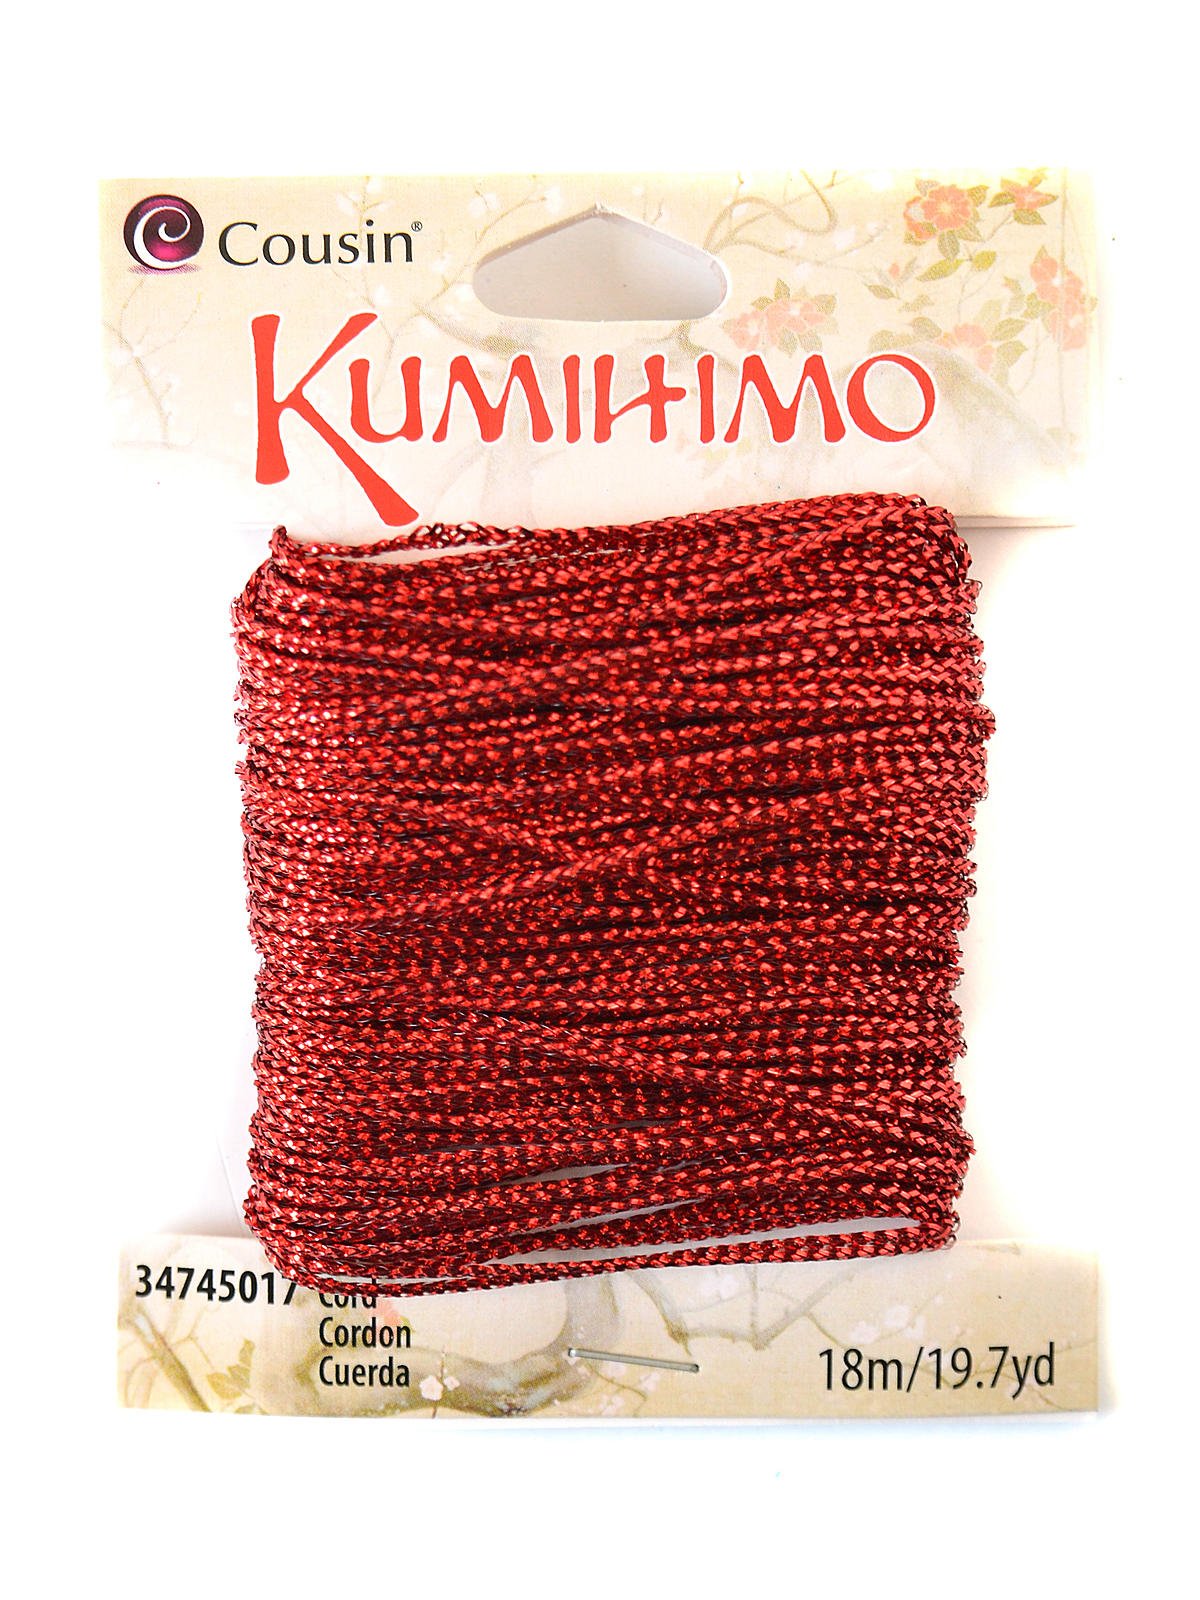 Cousin - Kumihimo Cord